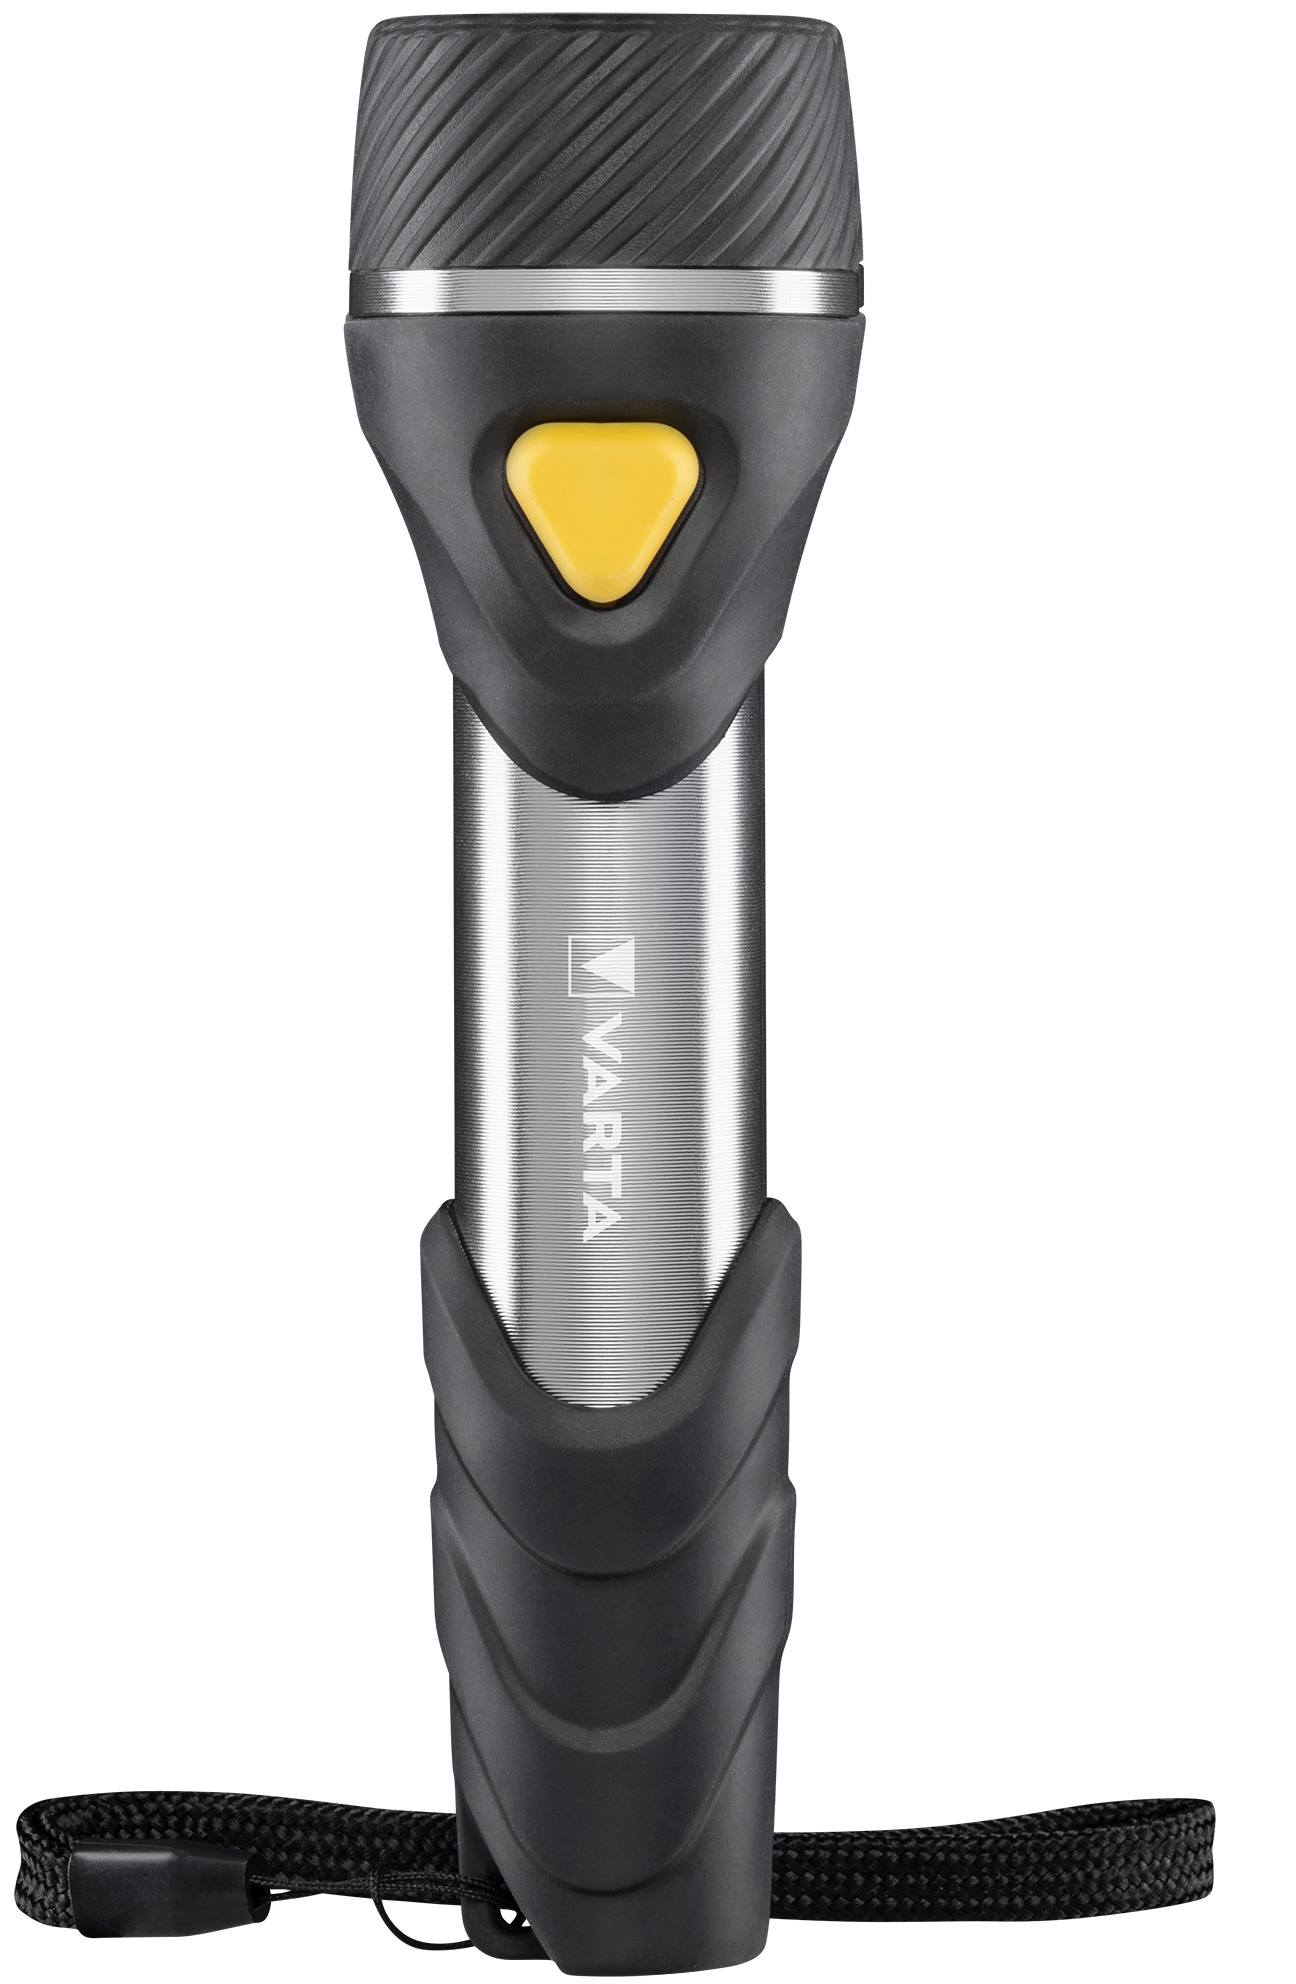 Varta Day Light Multi LED F20 - Taschenlampe